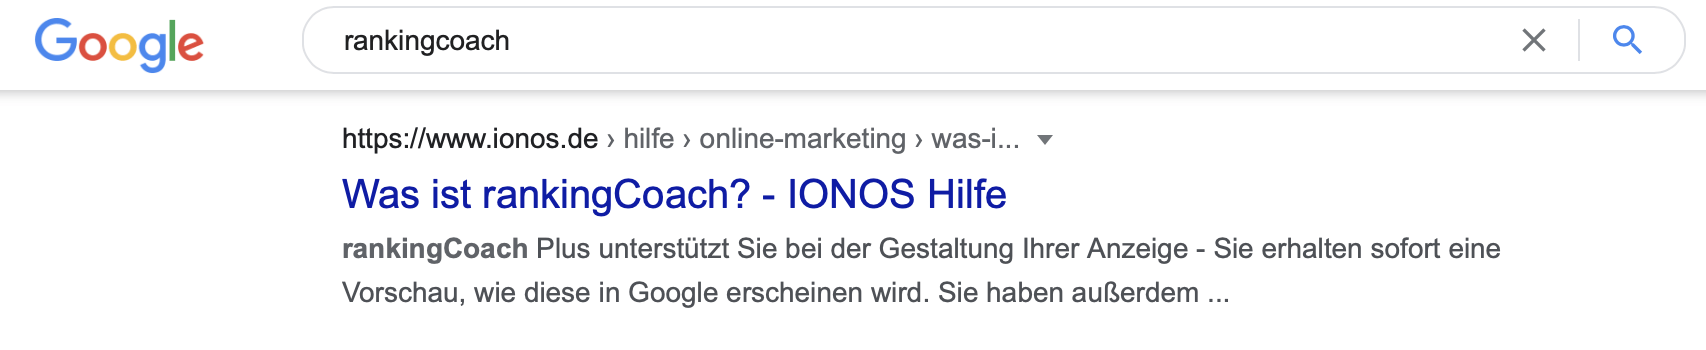 Beispiel-URL von IONOS.de